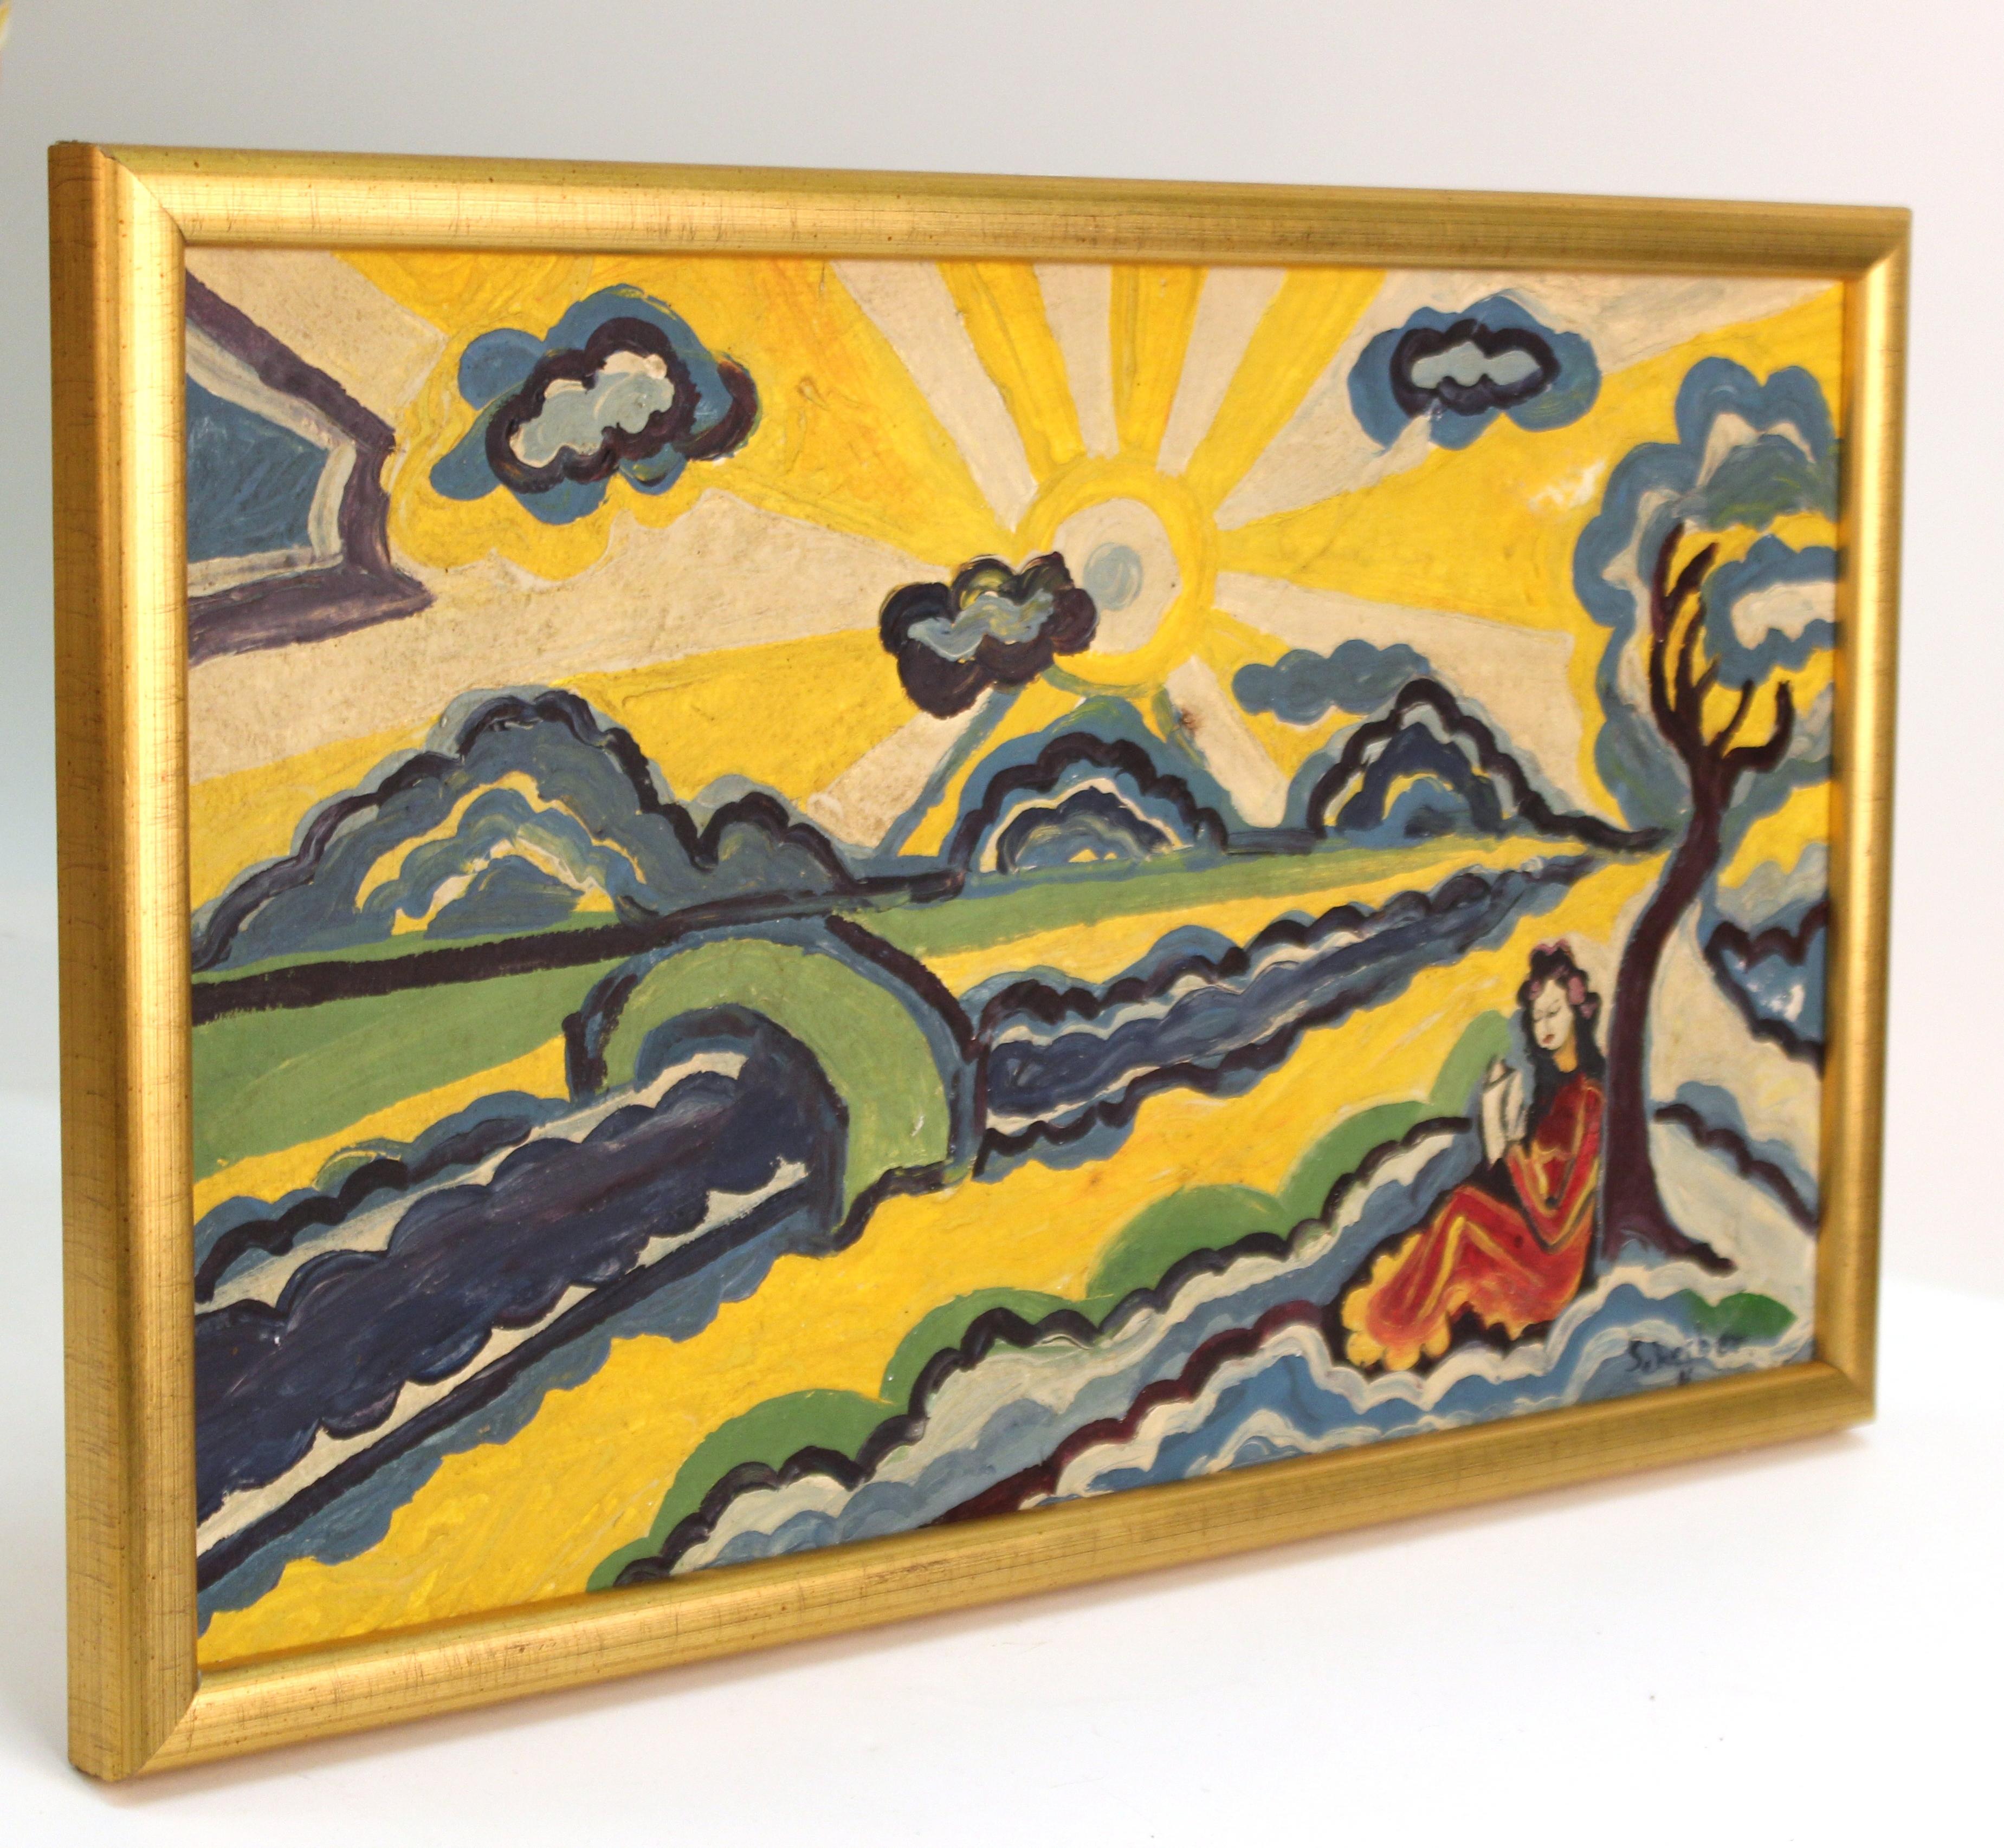 Tableau de paysage moderniste représentant une femme lisant au soleil, attribué au peintre moderniste hongrois Hugo Scheiber (1873 - 1950). L'œuvre, exécutée sur toile et encadrée dans un cadre en bois doré, date probablement du début du XXe siècle